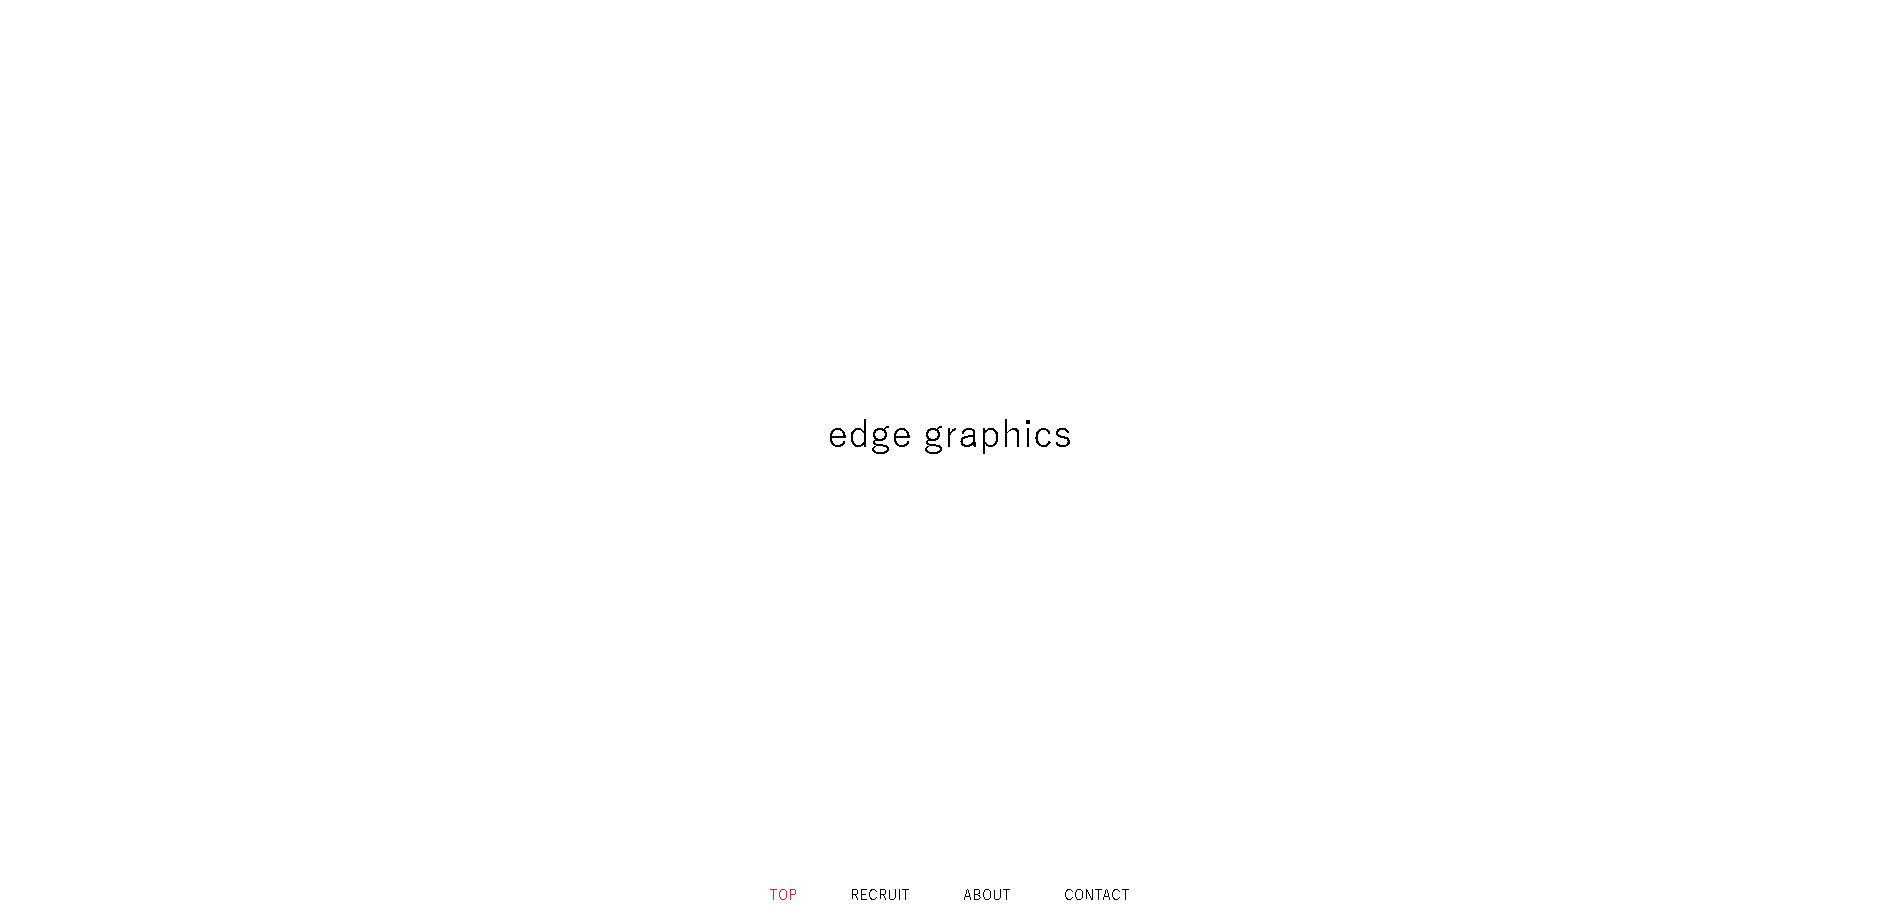 edge graphicsのedge graphicsサービス